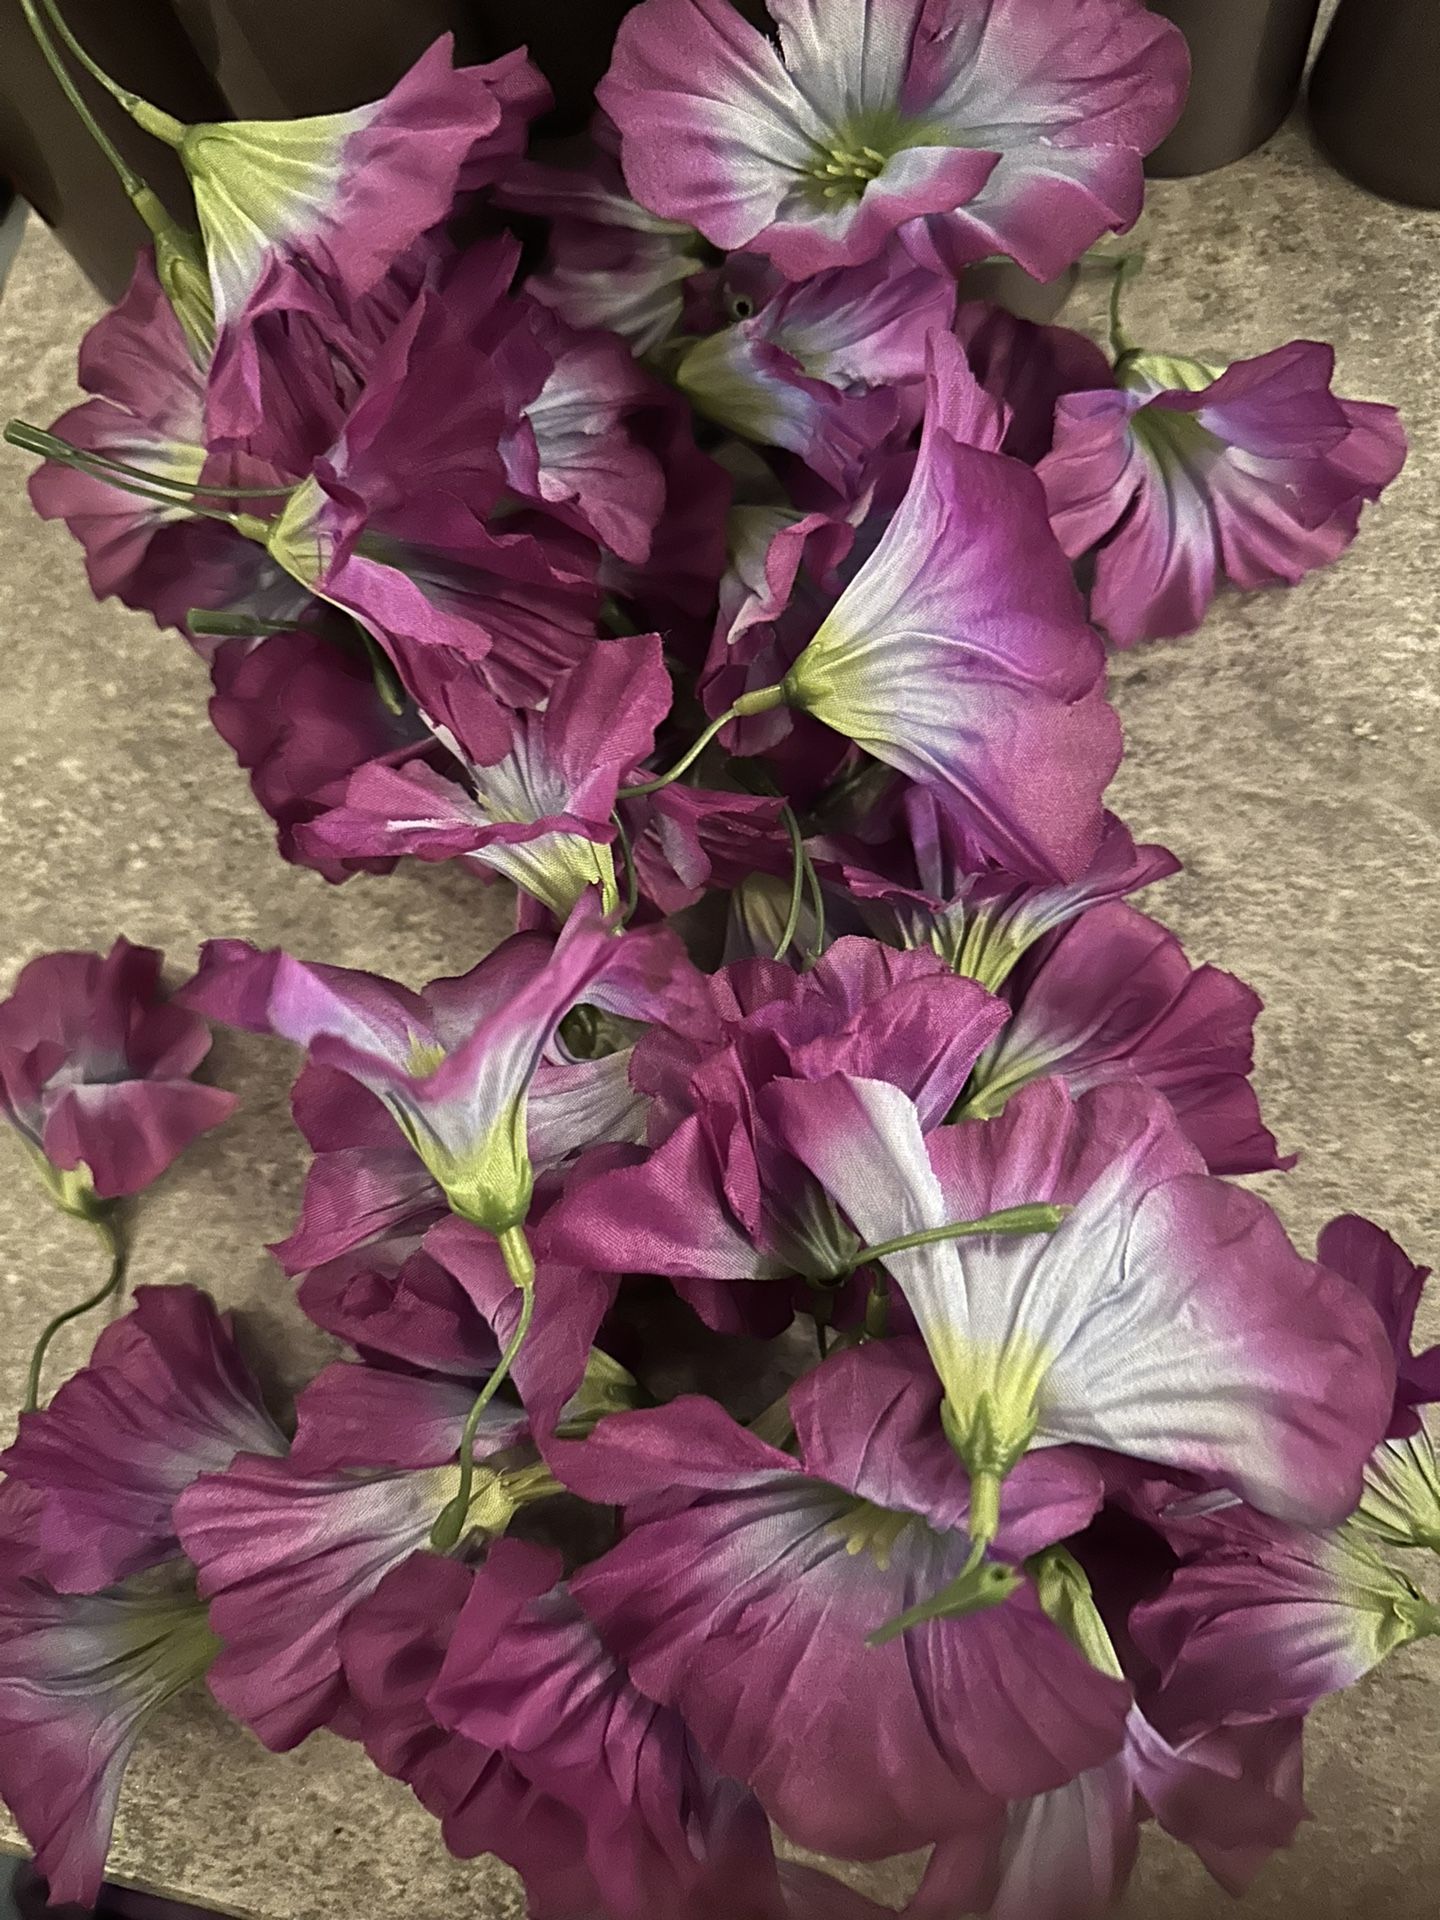 Loose Purple Flowers